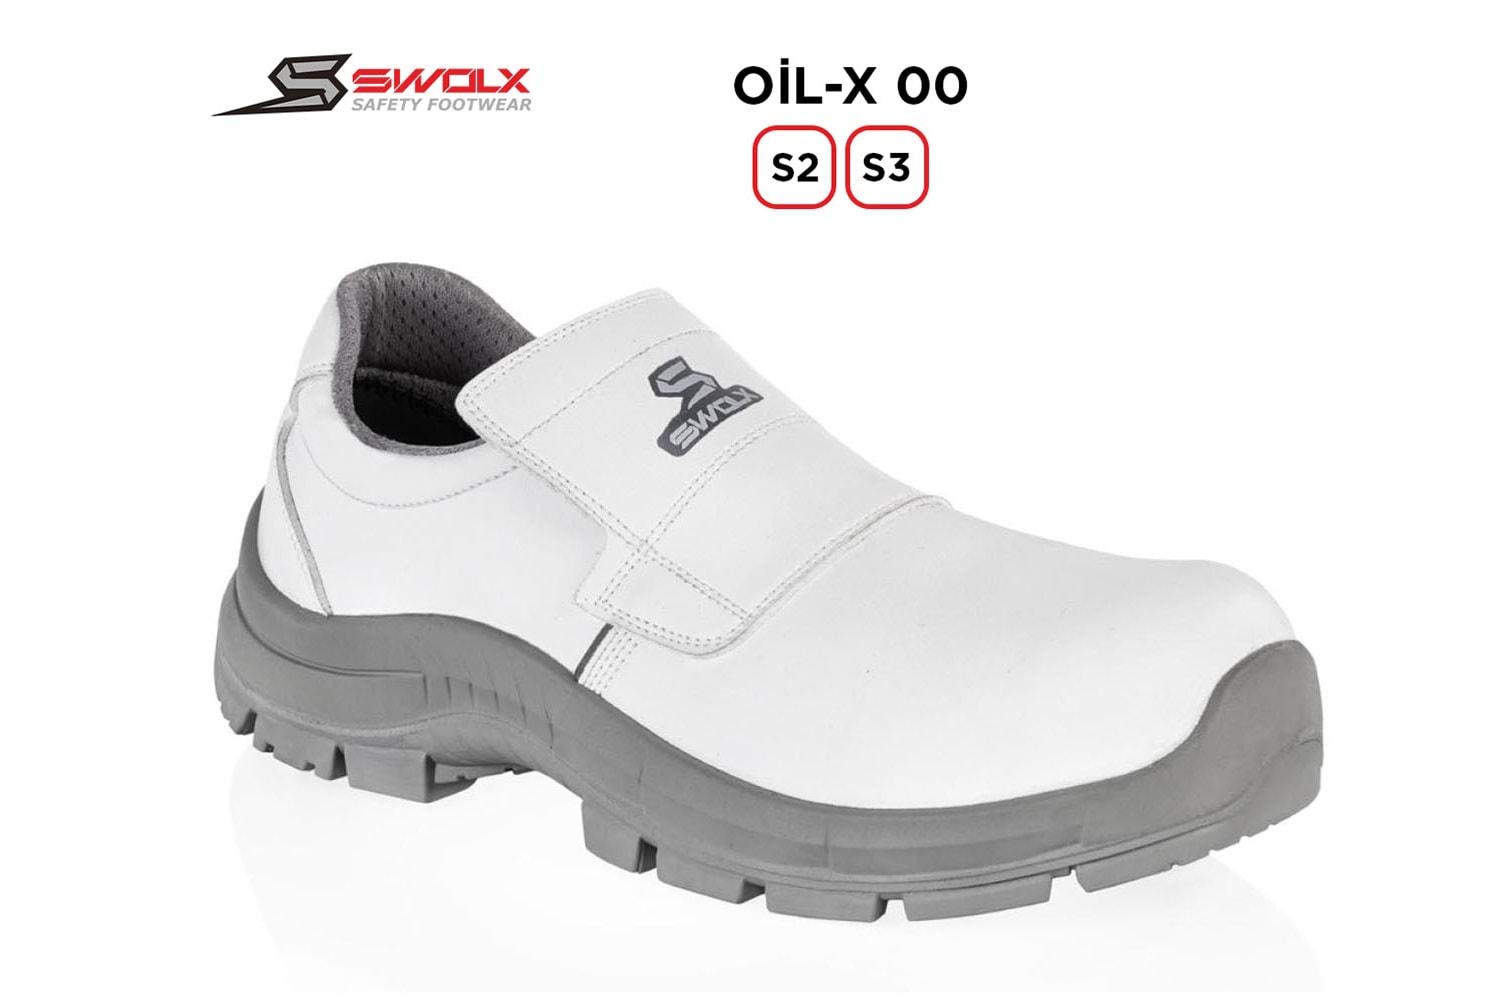 Swolx İş Ayakkabısı - Oil-X 00 S2 Beyaz - 42